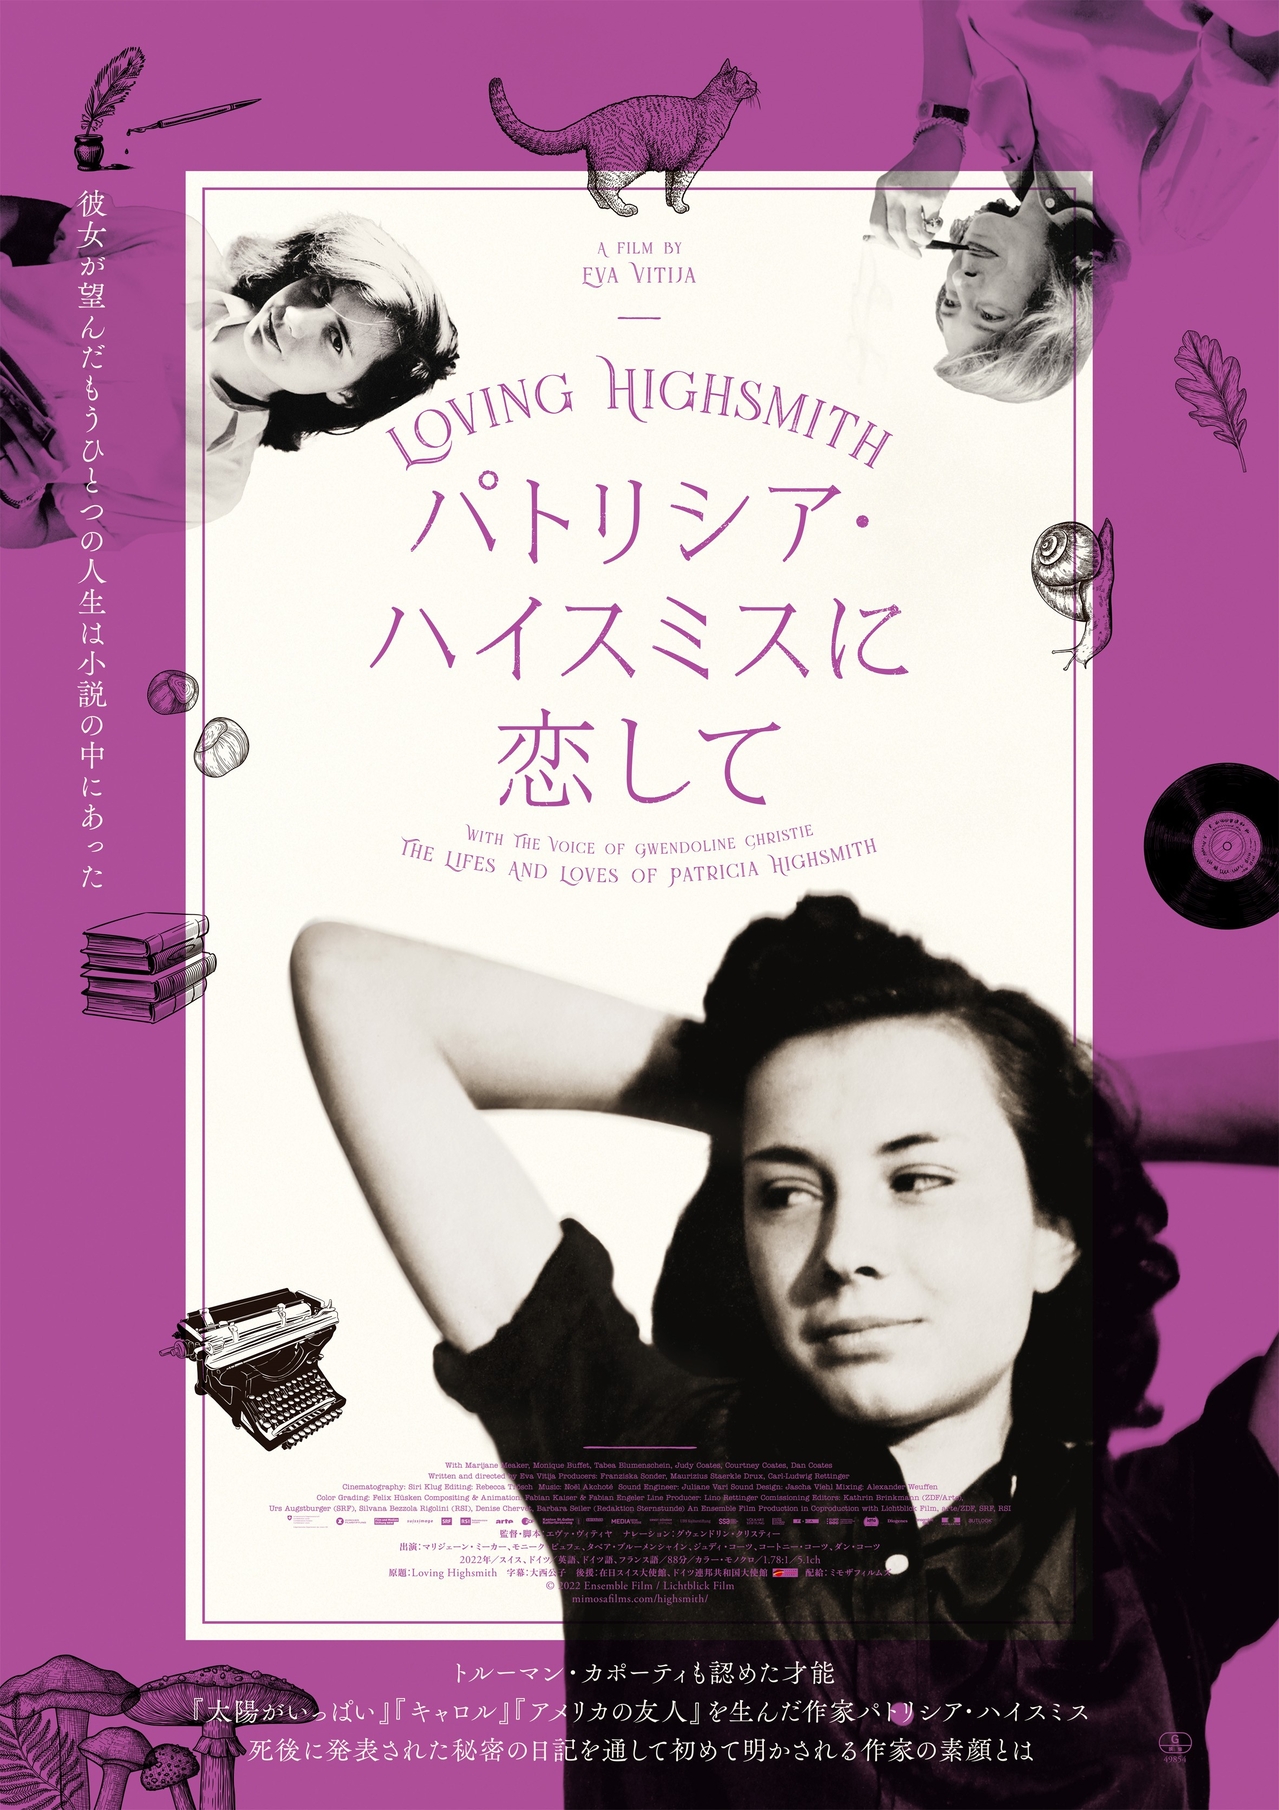 「キャロル」は自伝的小説、同性愛を隠した人気作家の素顔とは「パトリシア・ハイスミスに恋して」11月3日公開